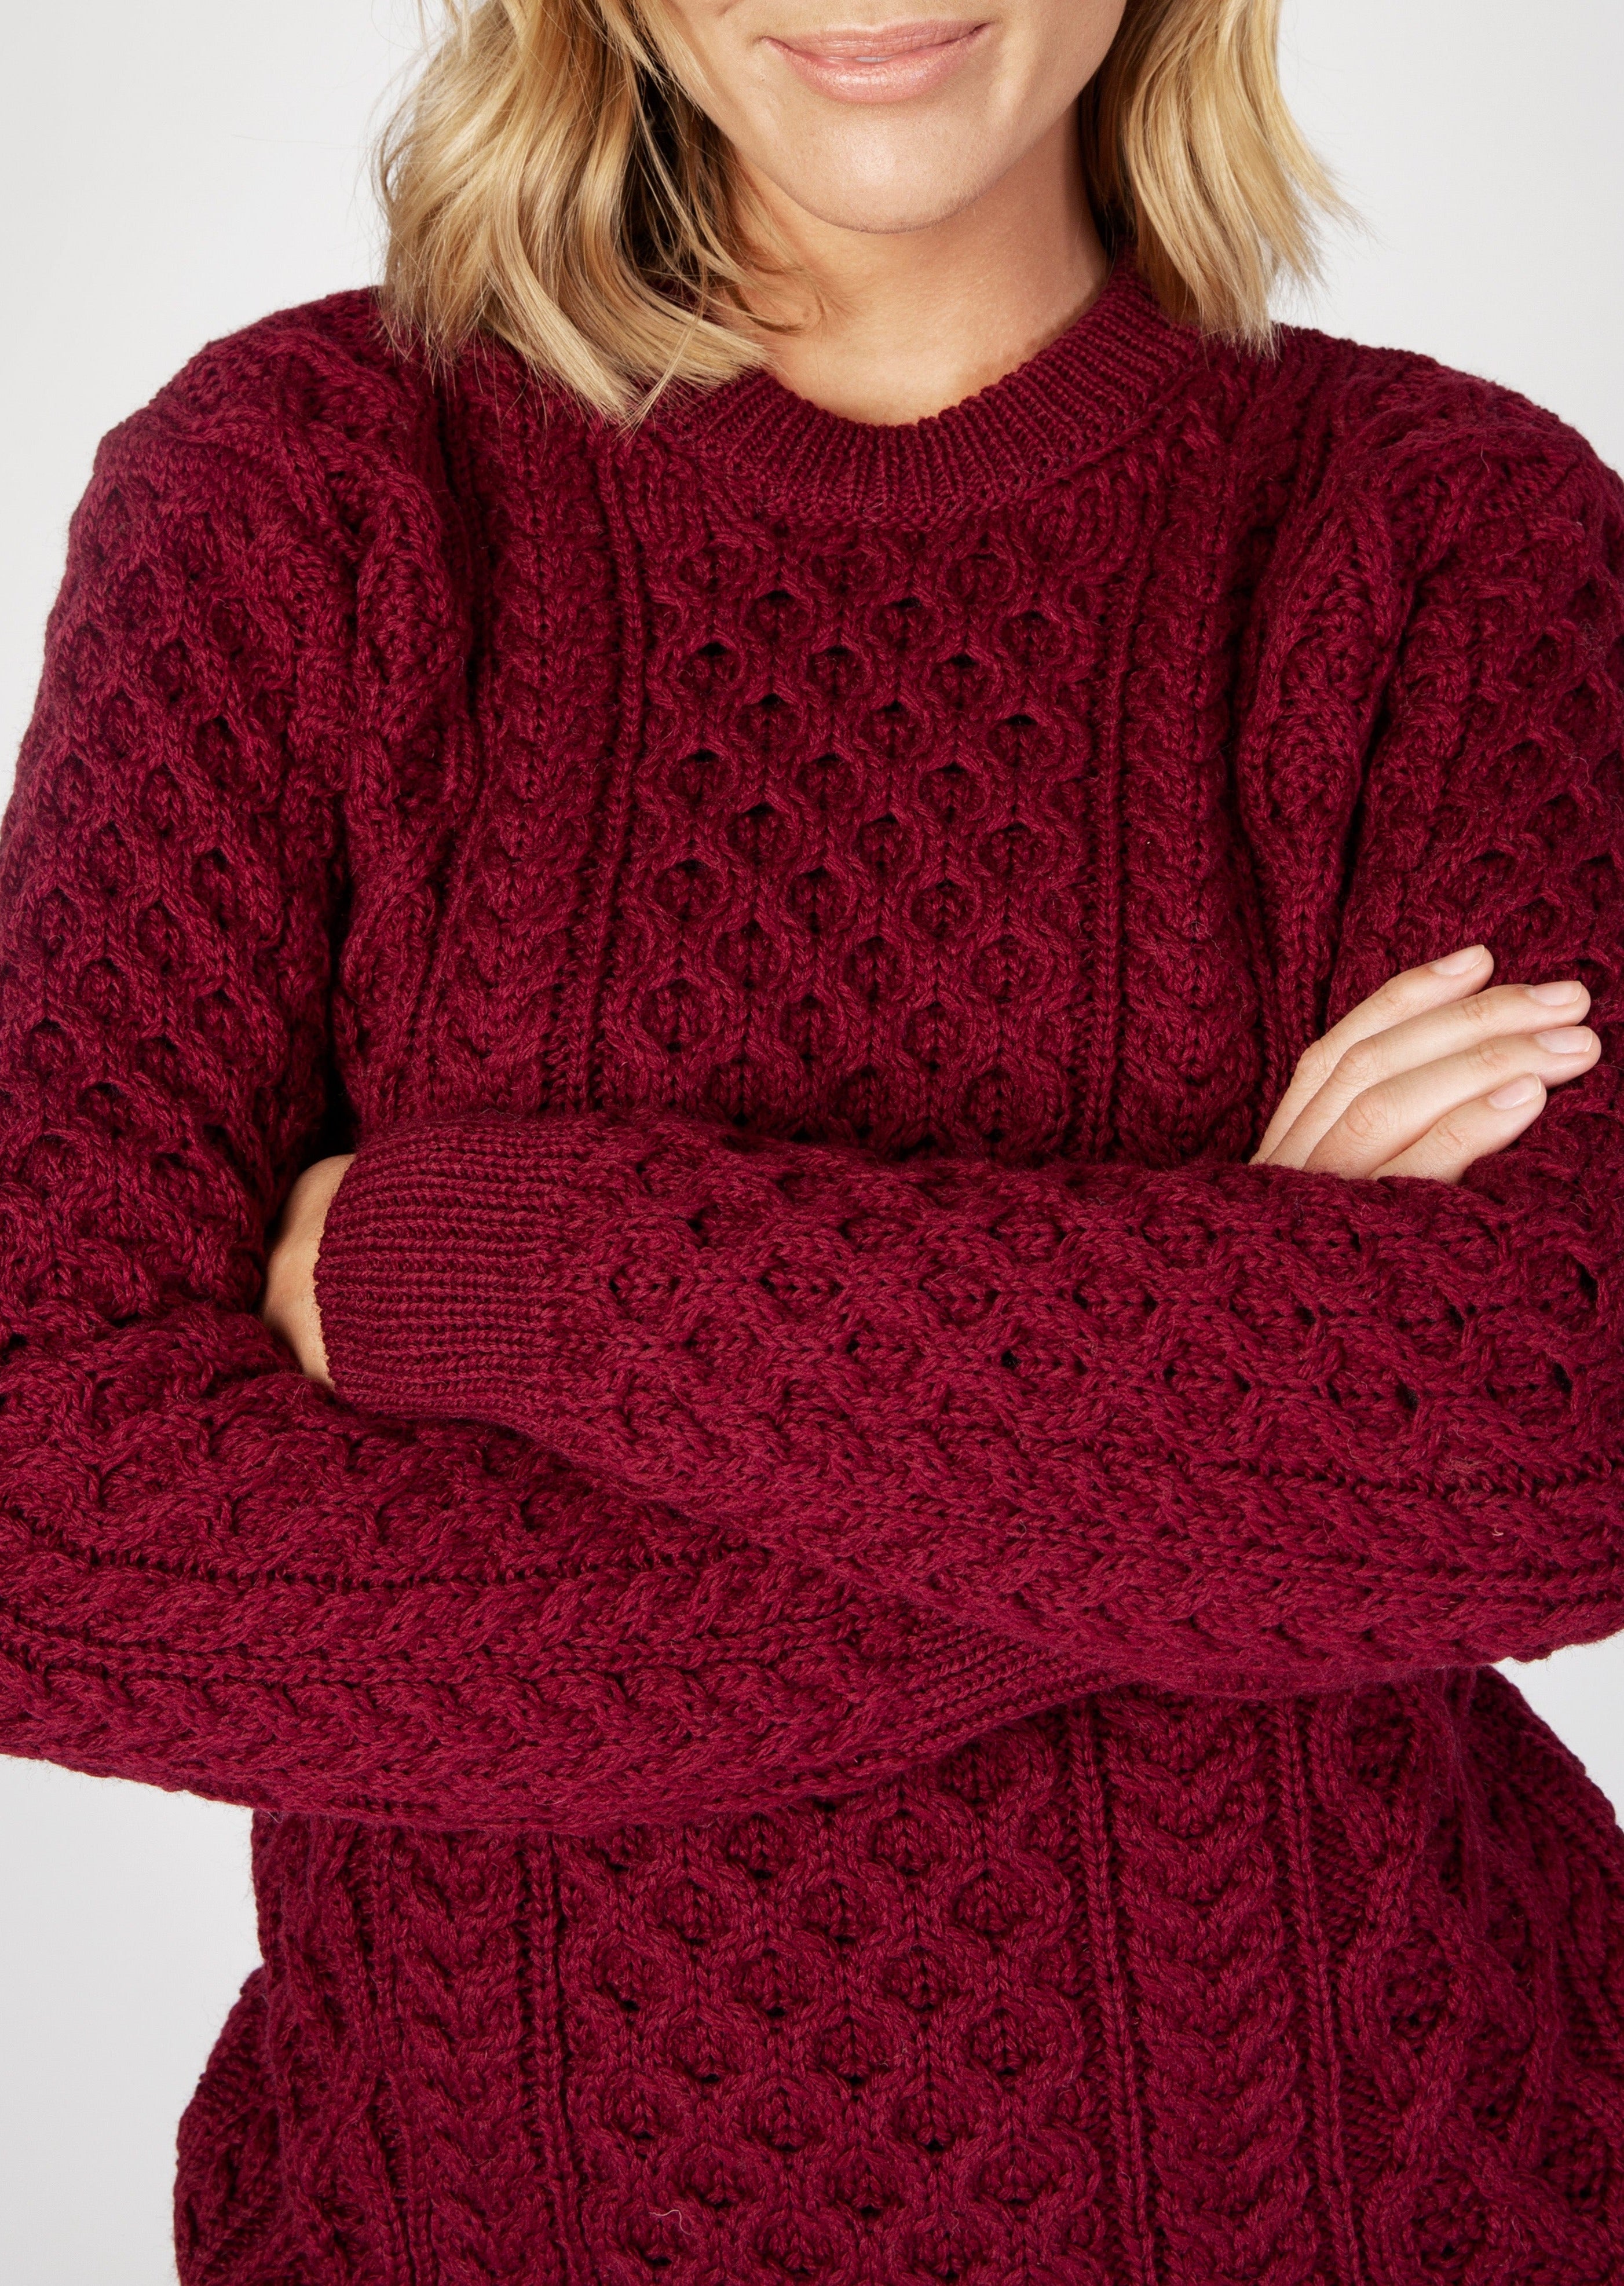 IrelandsEye Women's Aran Sweater | Claret